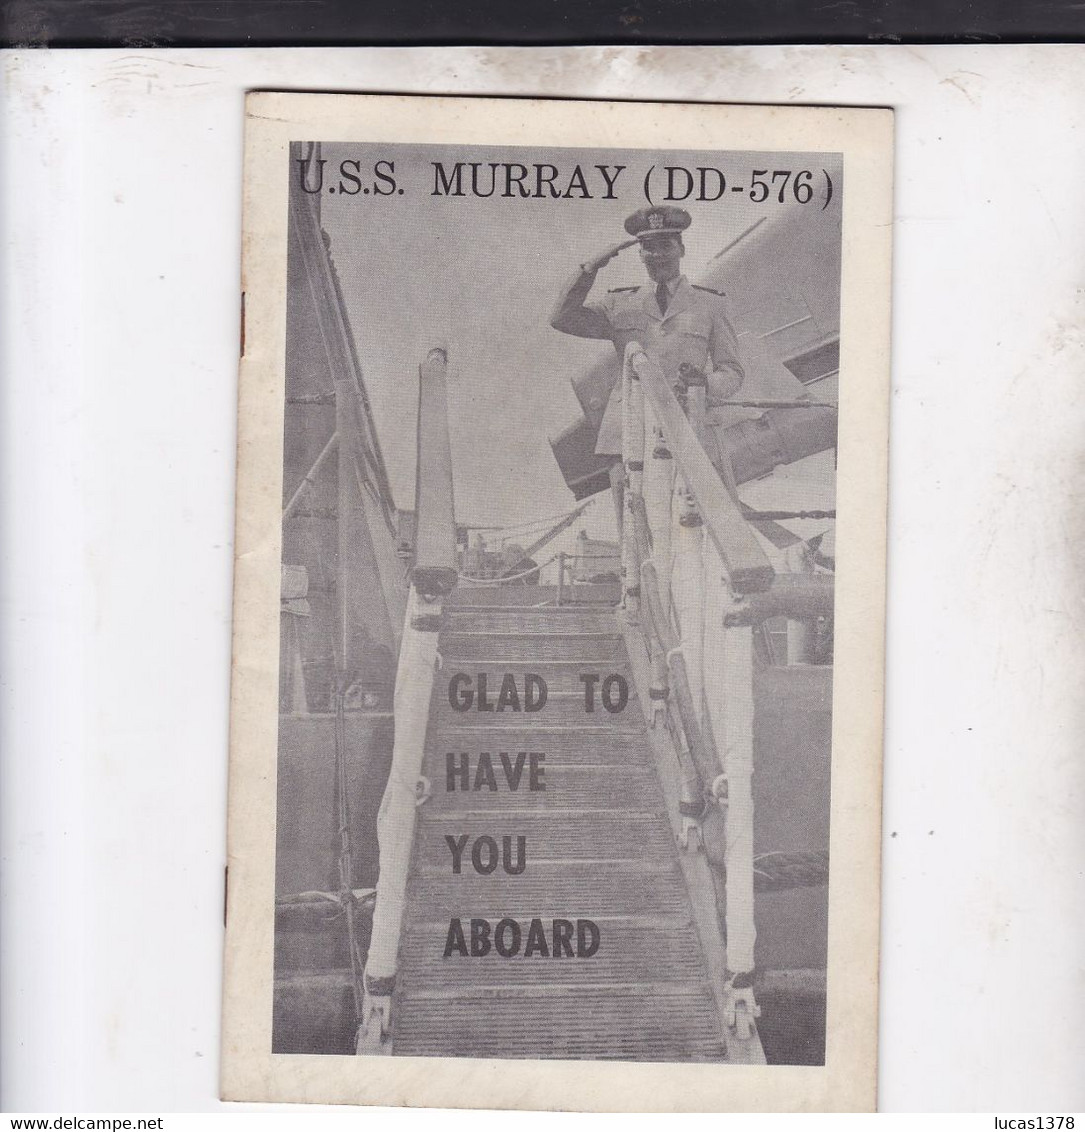 USS MURRAY / DD 576 / GLAD TO HAVE YOU ABOARD / LIVRET DE BORD 8 PAGES / RARE - Forces Armées Américaines